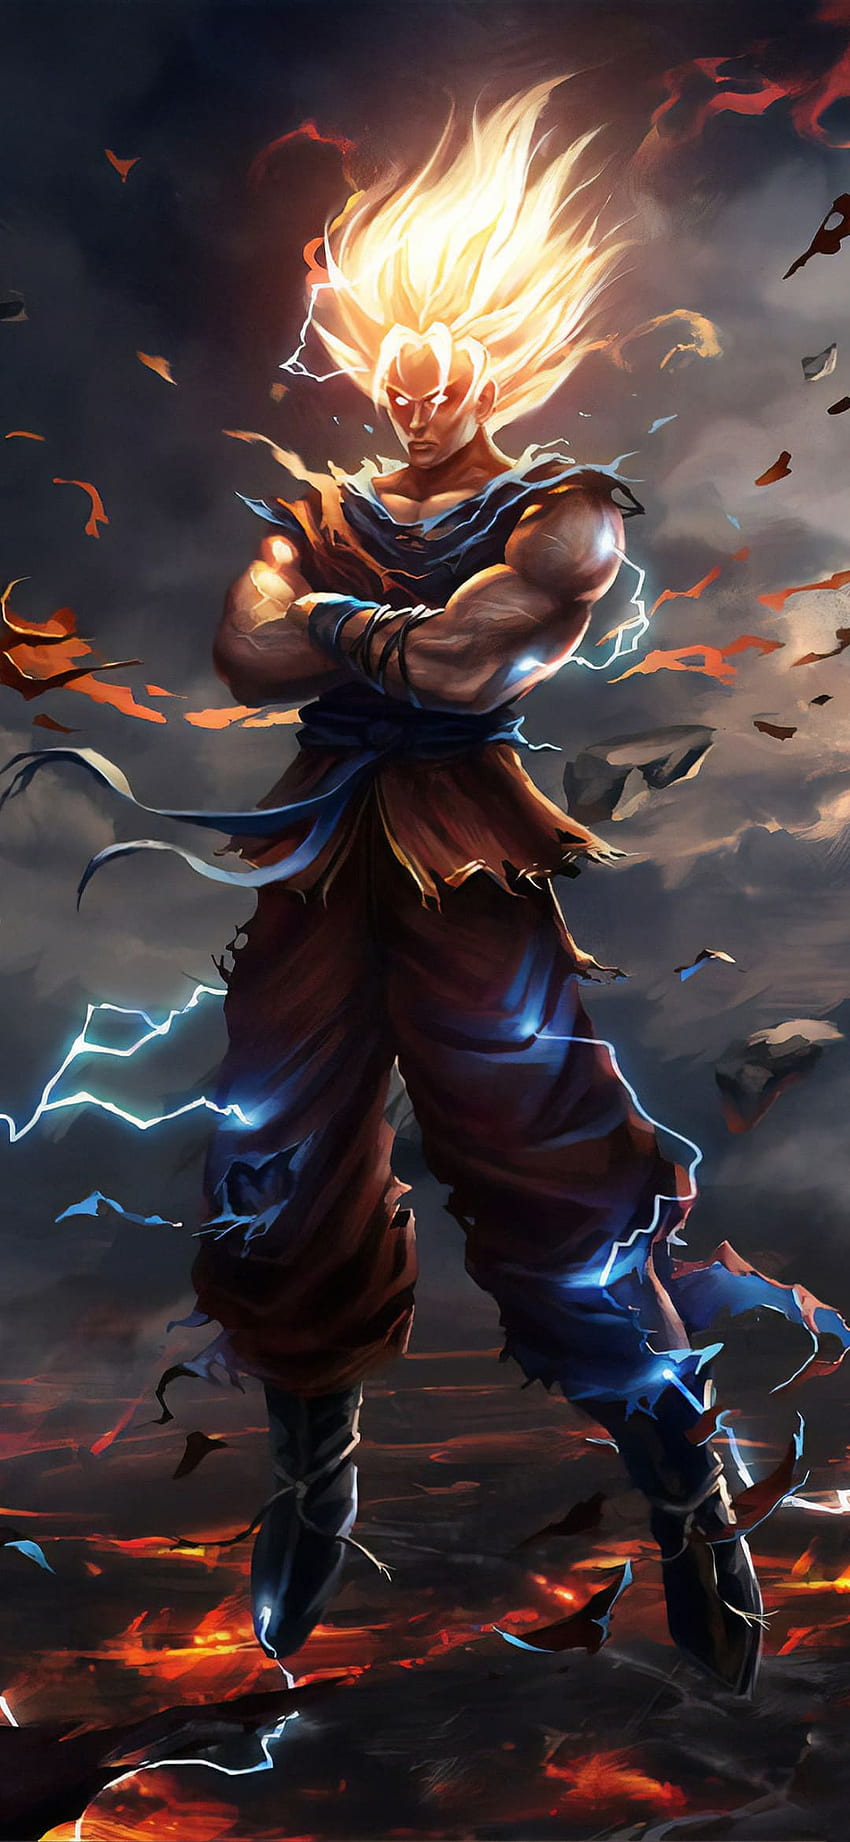 Goku legal, Arte cg, Anime, personagem fictício, demônio, figura de ação, ilustração, mitologia, Jogos, RPG online massivamente multiplayer, Goku Gym Papel de parede de celular HD